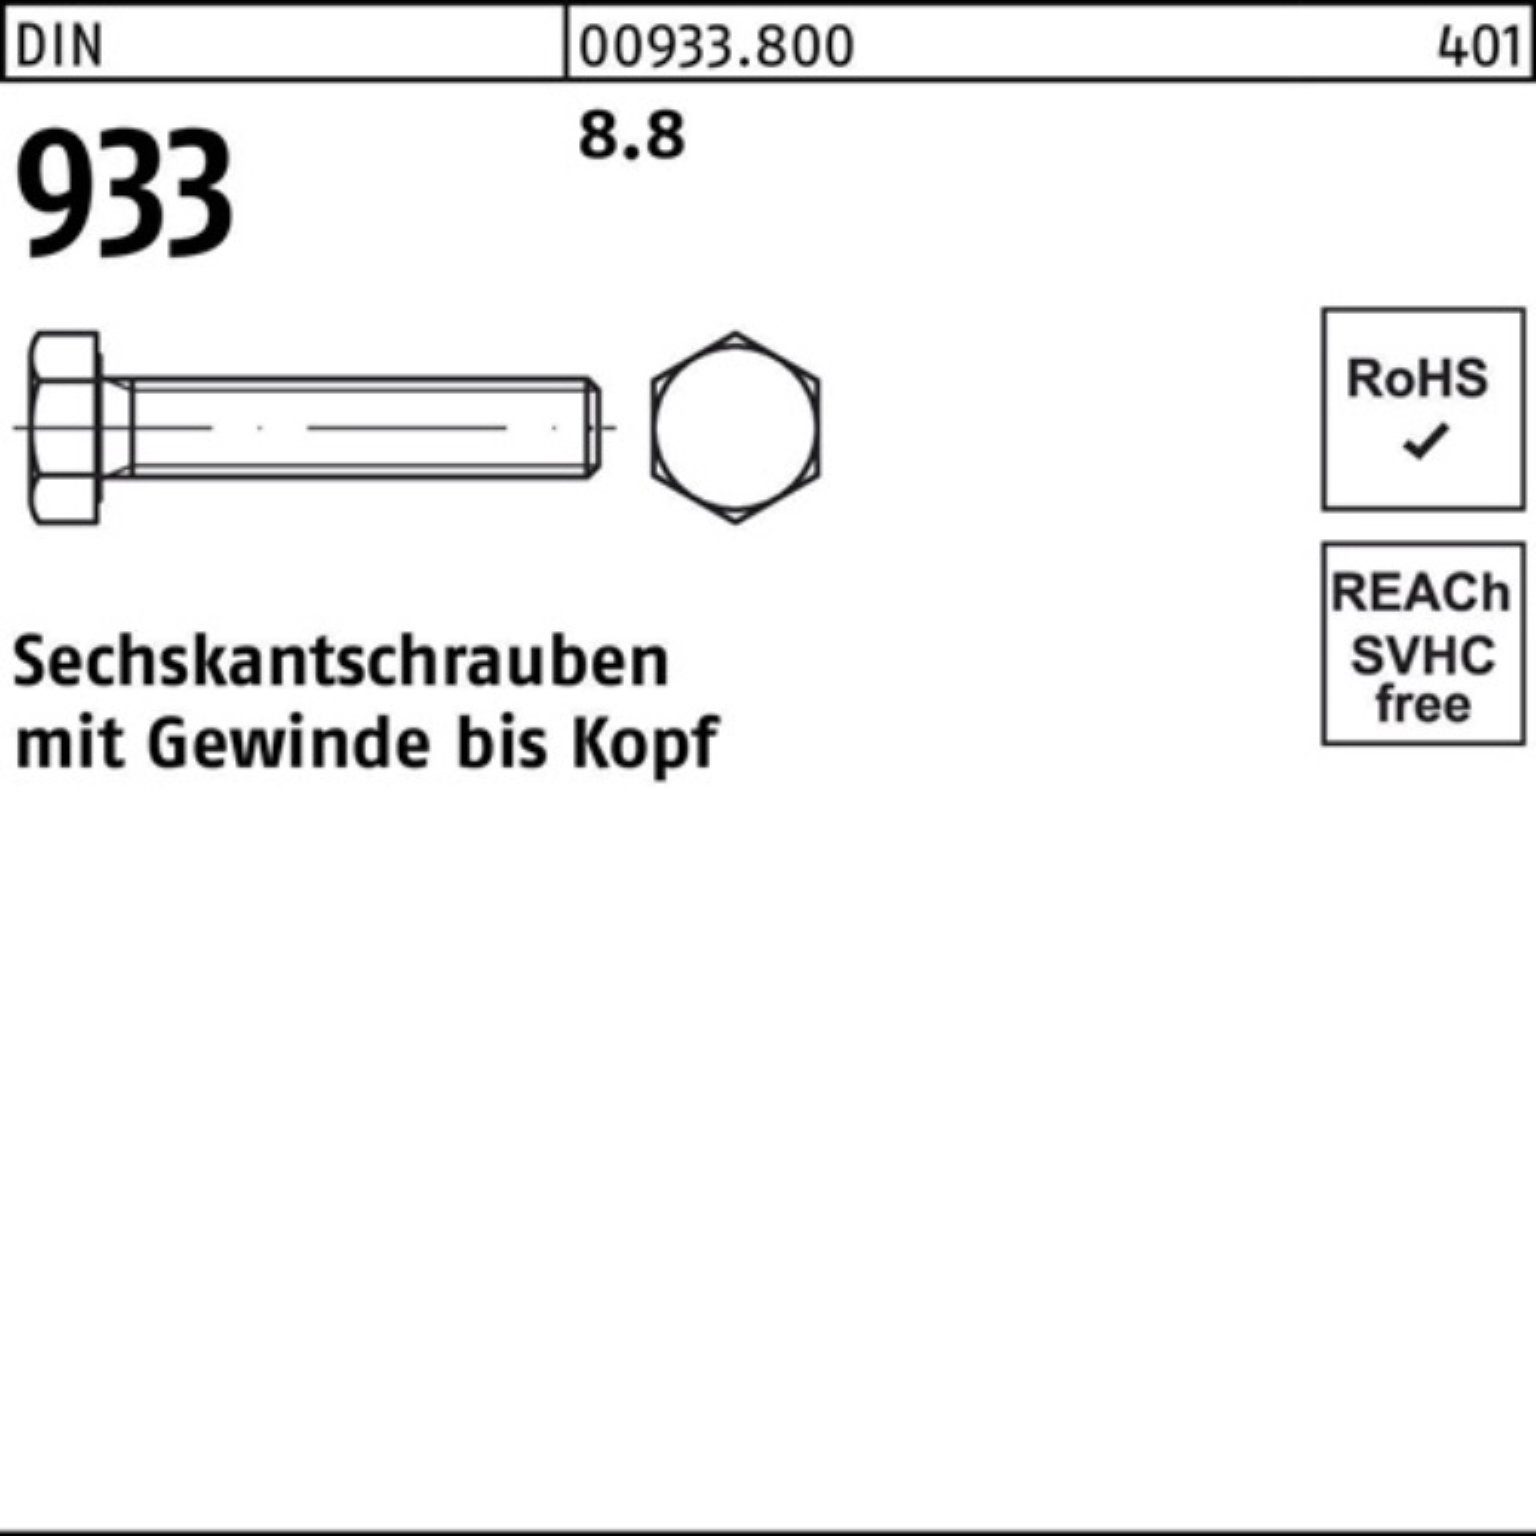 Sechskantschraube 1 8.8 100er DIN Pack M33x Sechskantschraube 933 VG 160 Reyher Stück 933 DIN